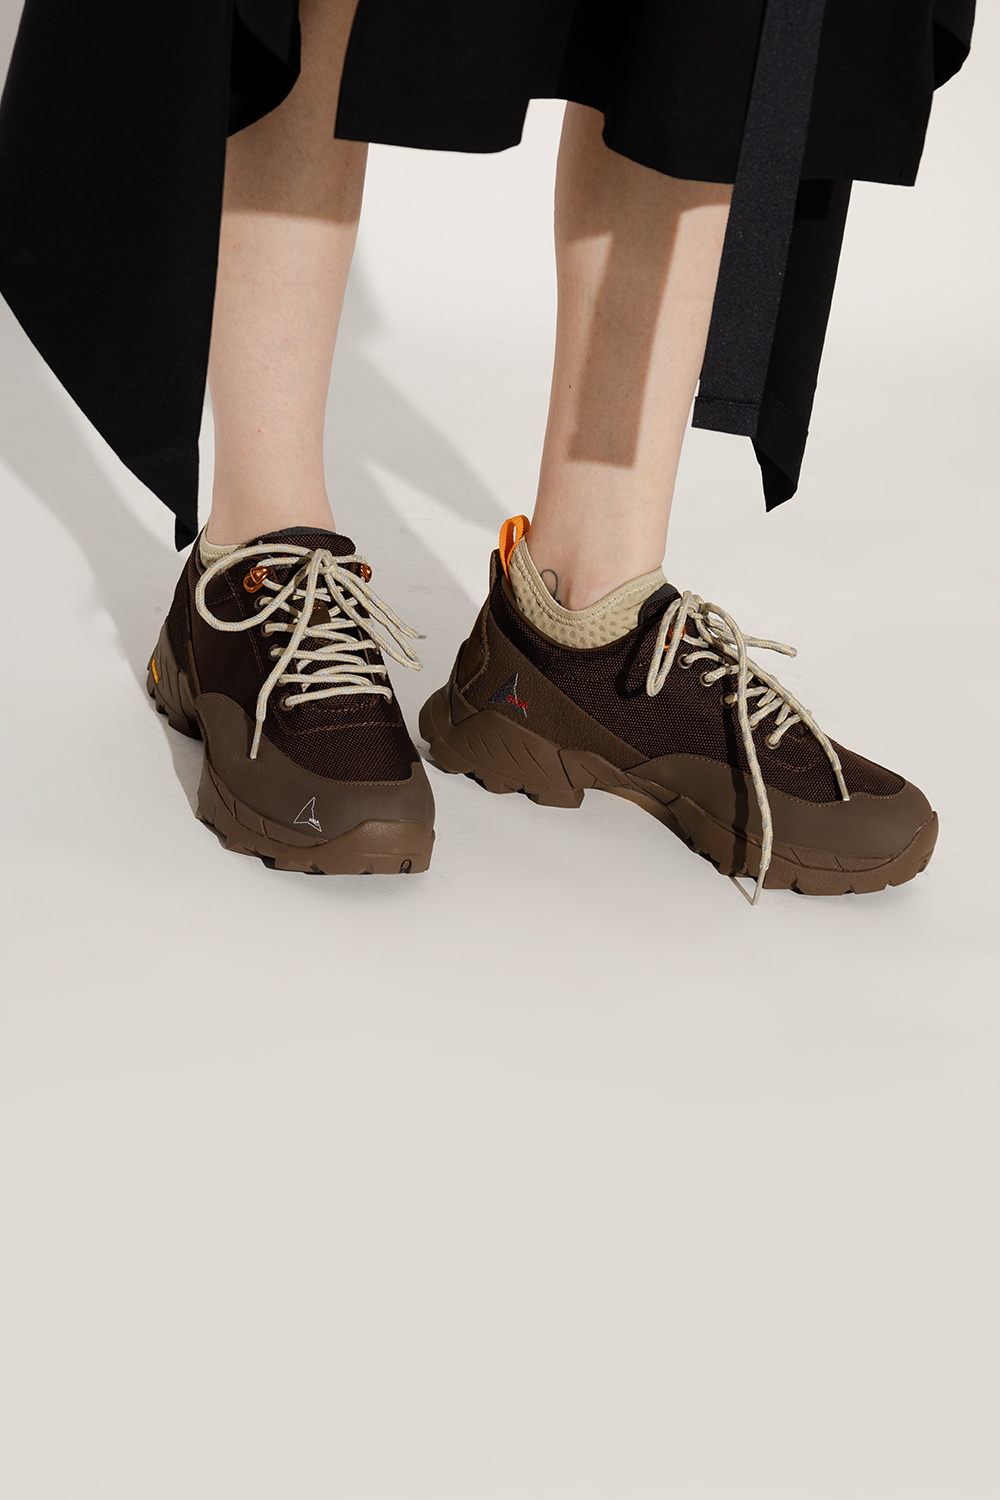 ROA ‘Neal’ hiking boots | Women's Shoes | Vitkac